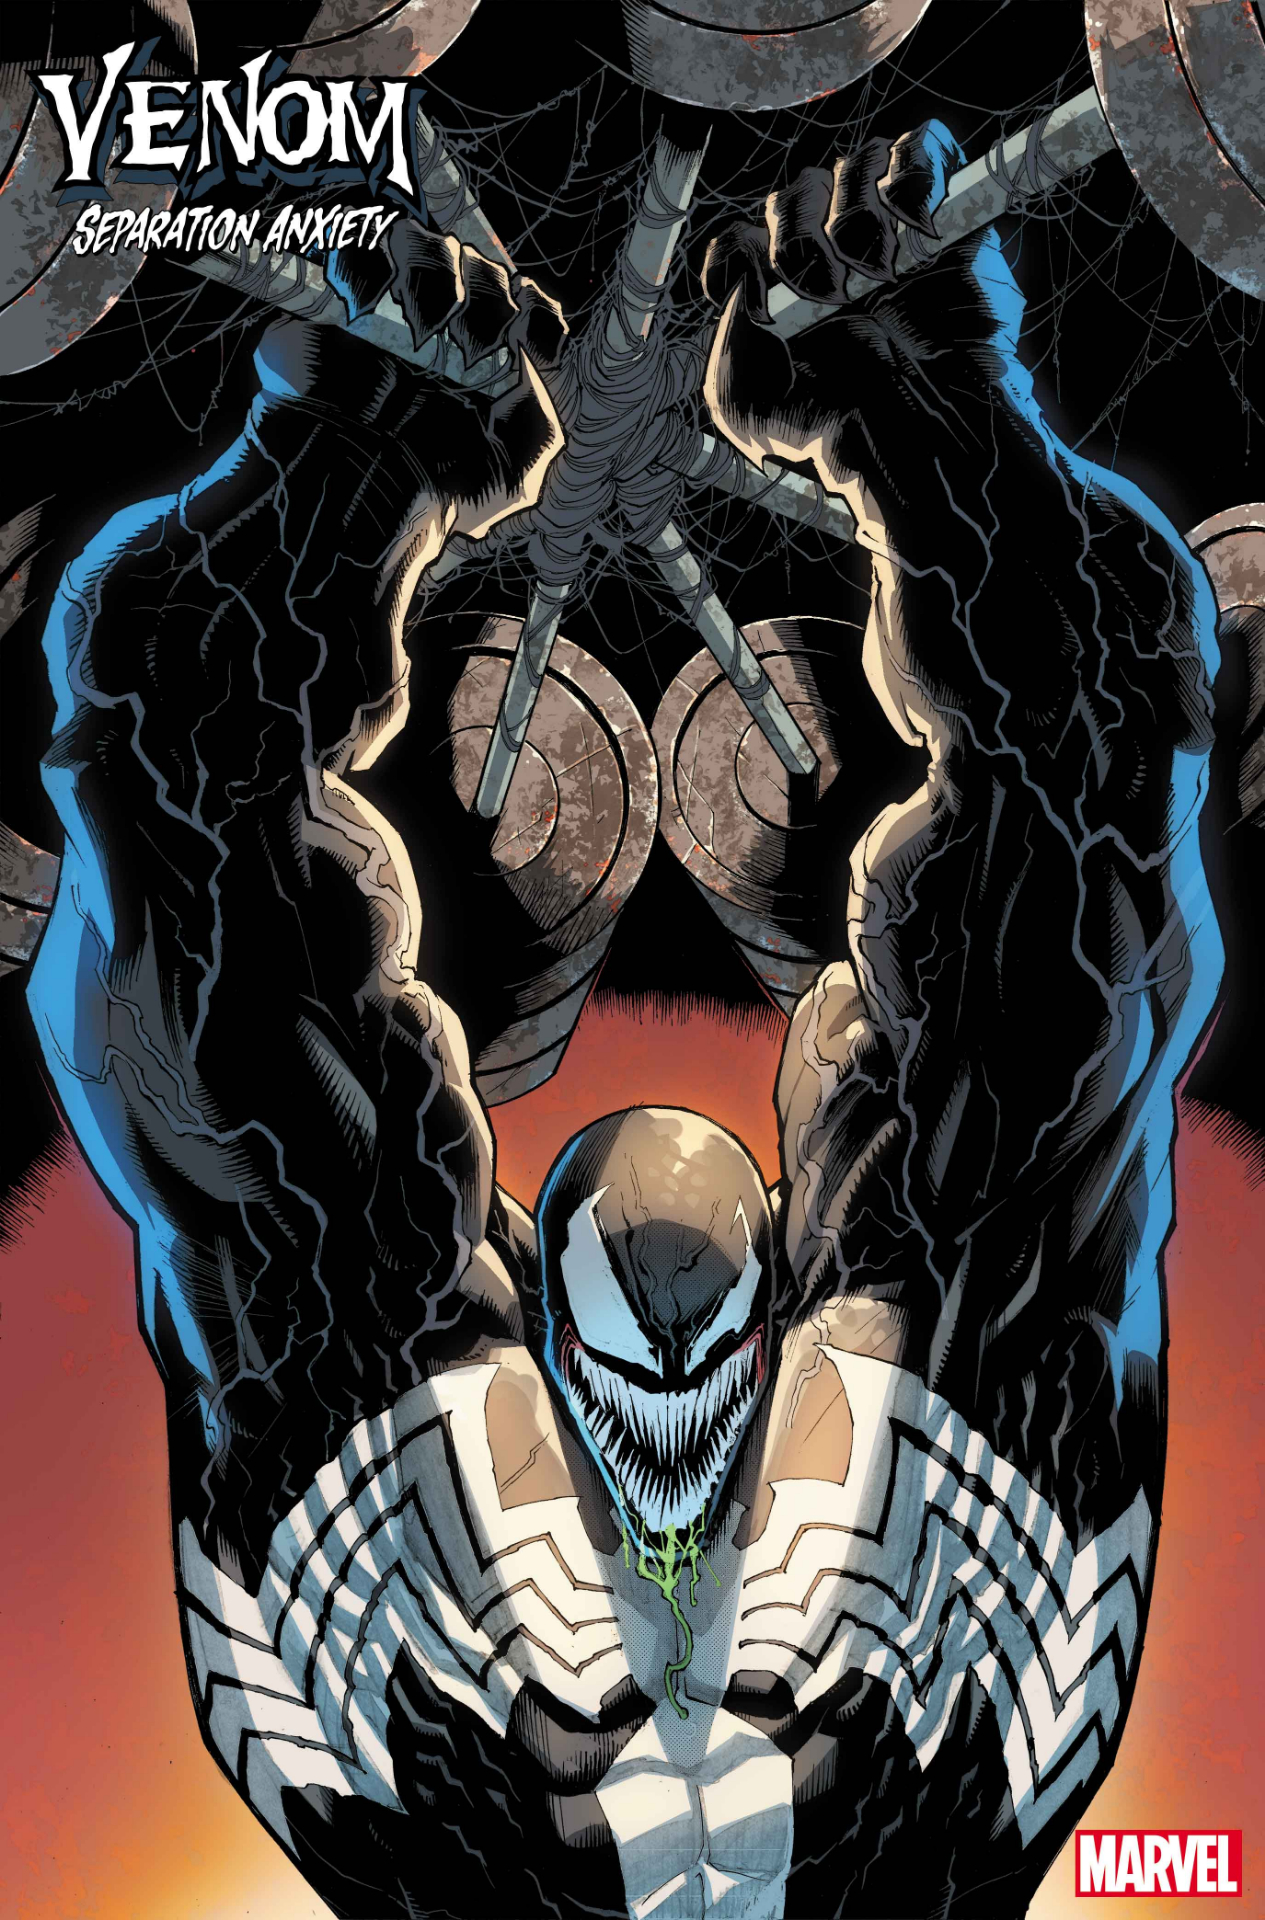 Venom: Separation Anxiety #1 противопоставляет классического смертельного защитника Венома одному из самых отвратительных злодеев Marvel.